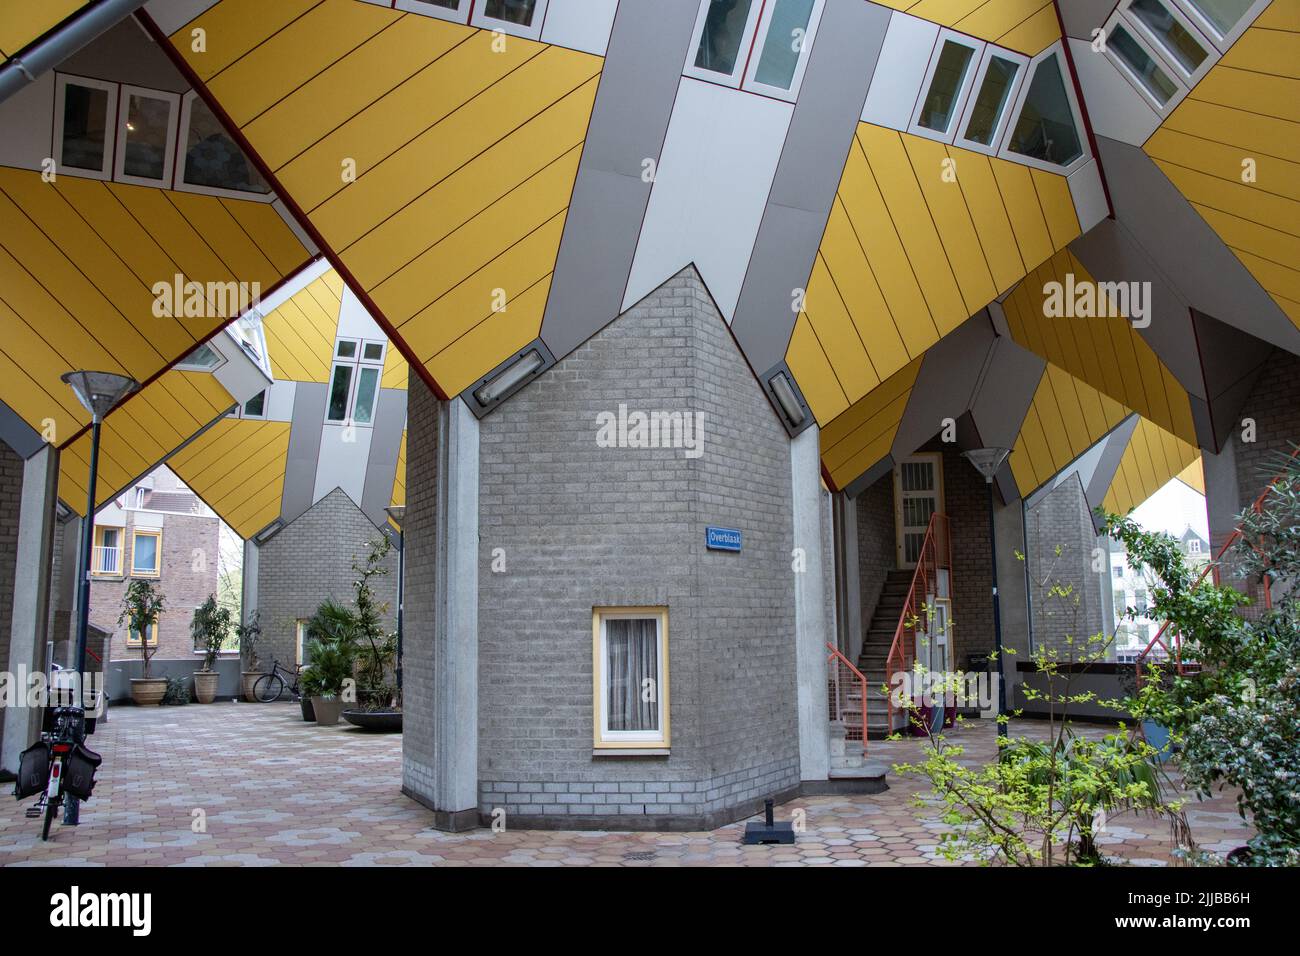 Kubuwoningen - Maison cubique à Rotterdam. Près du vieux port. Pays-Bas. Banque D'Images